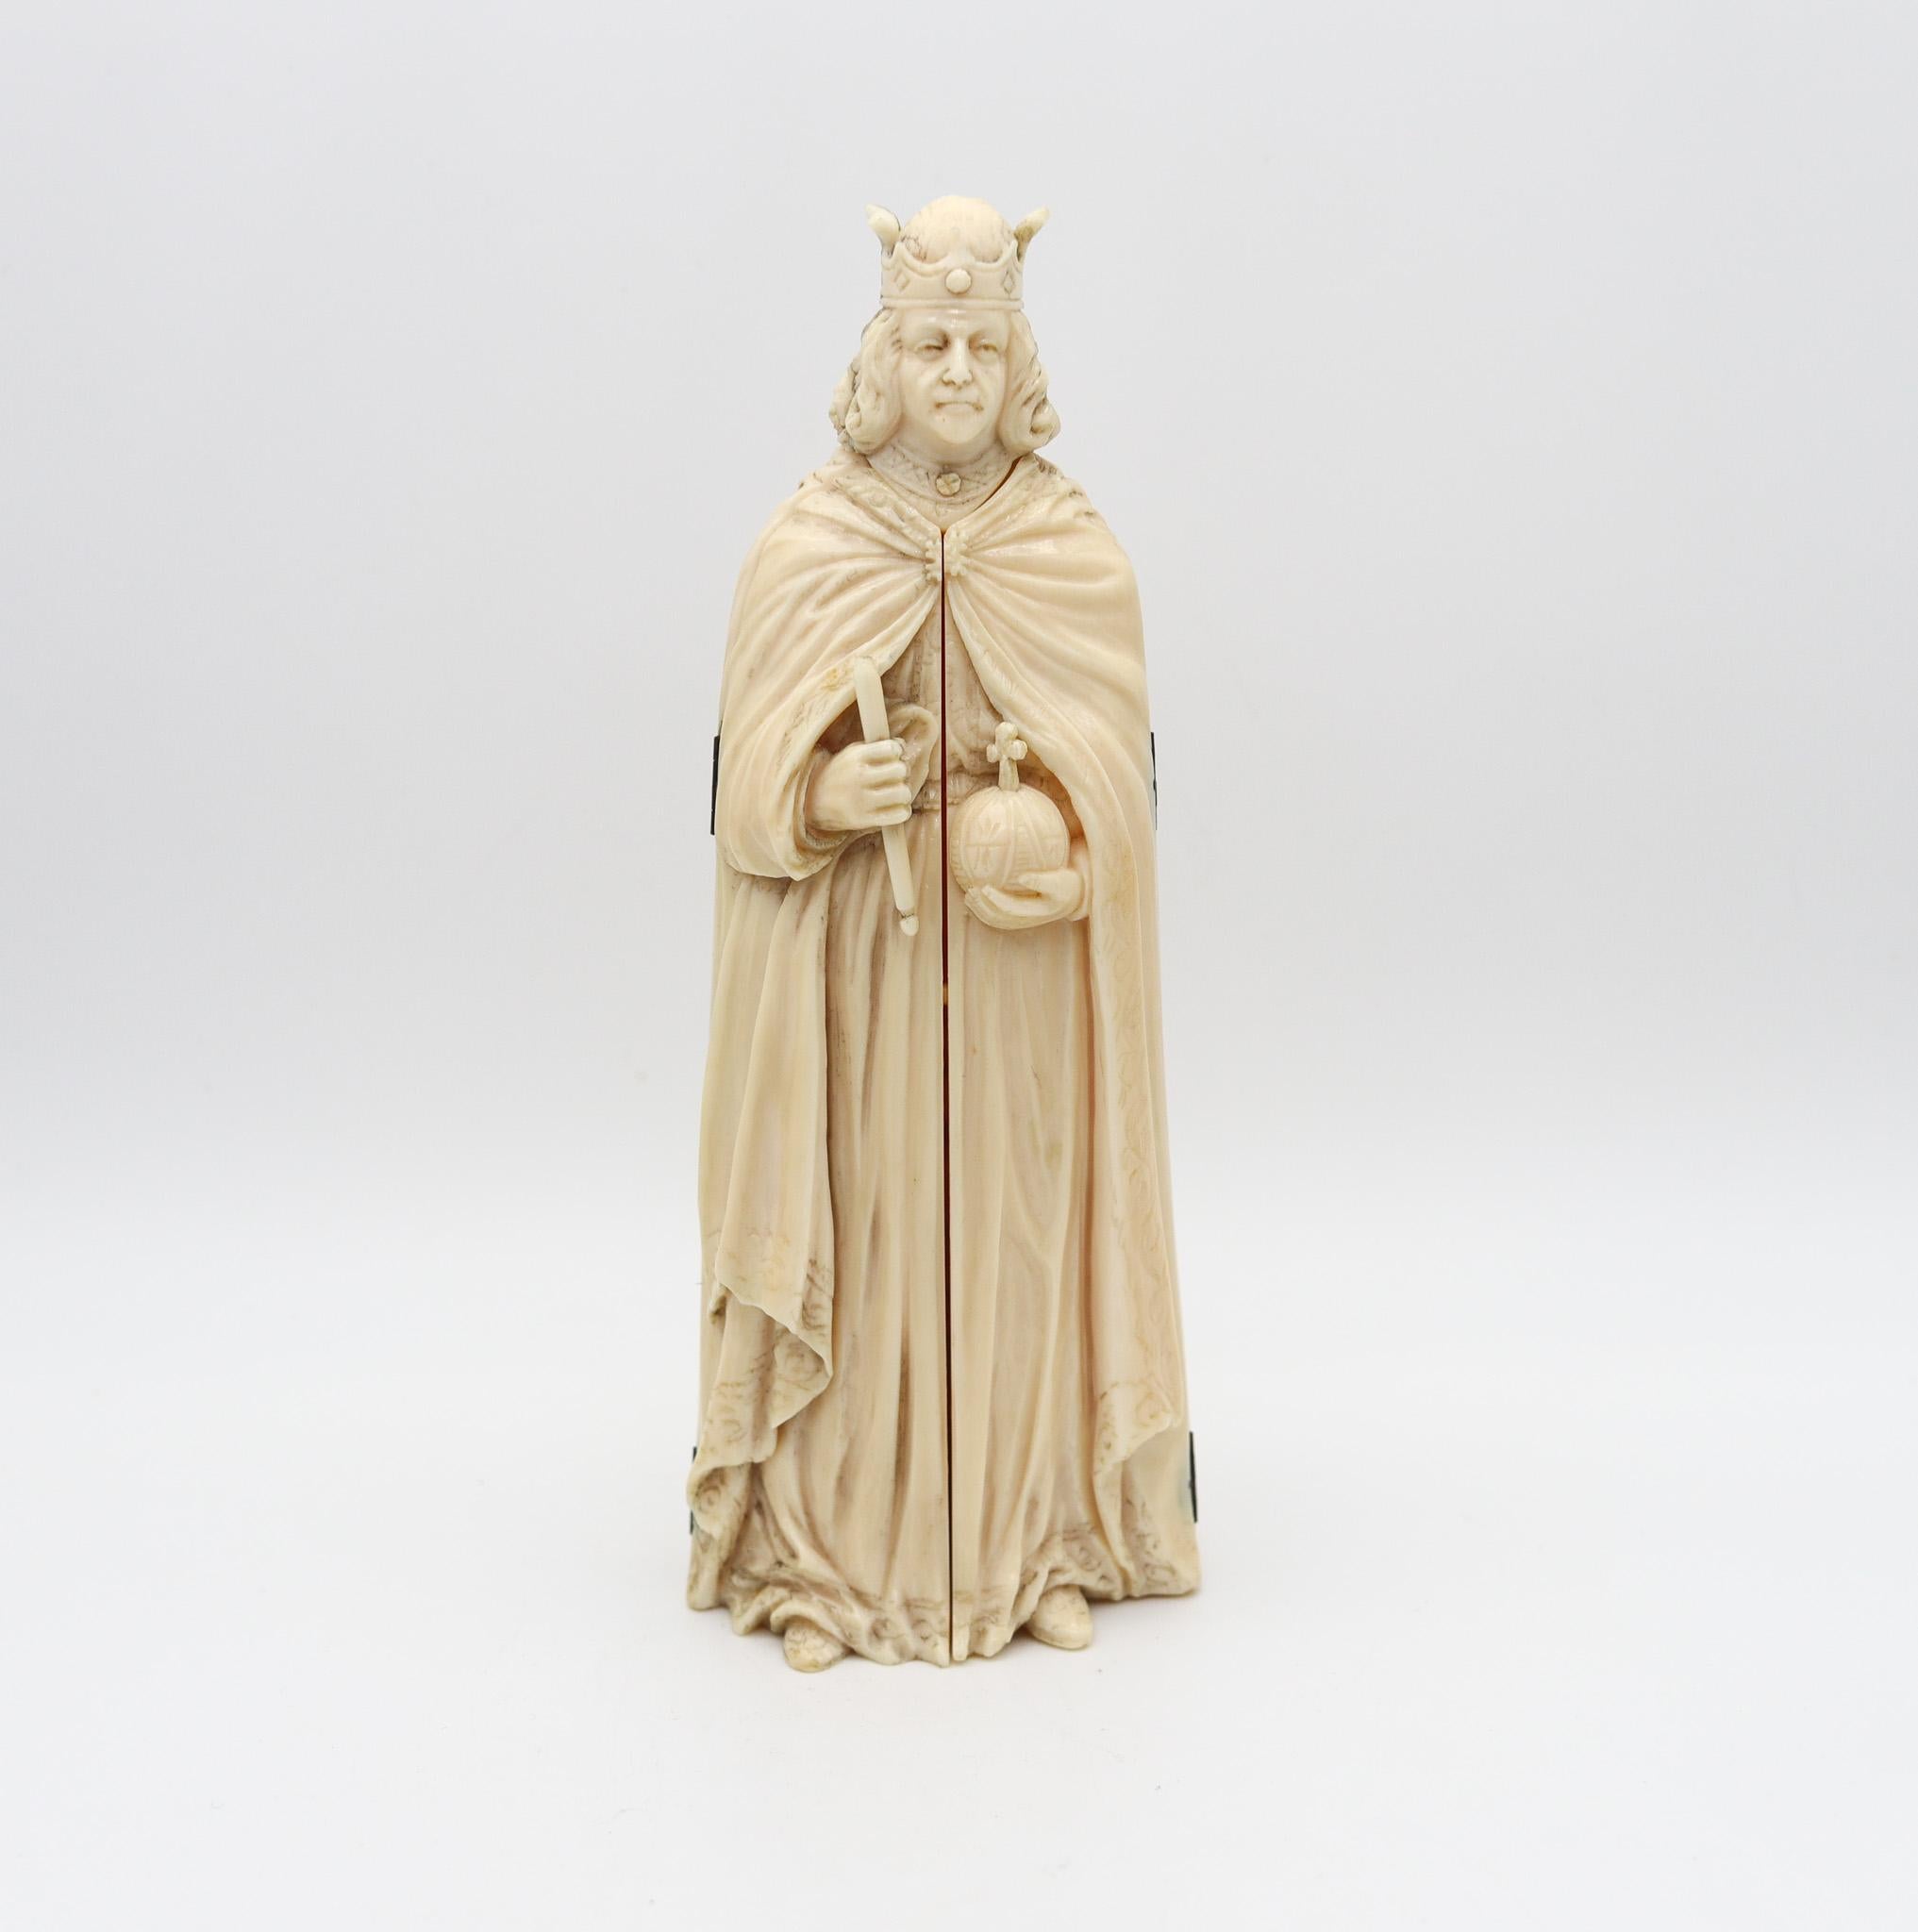 Un triptyque sculpté de l'empereur Charlemagne.

Magnifique sculpture en triptyque d'origine flamande réalisée dans le deuxième quart du XIXe siècle, vers 1850. Il a été soigneusement sculpté avec deux 